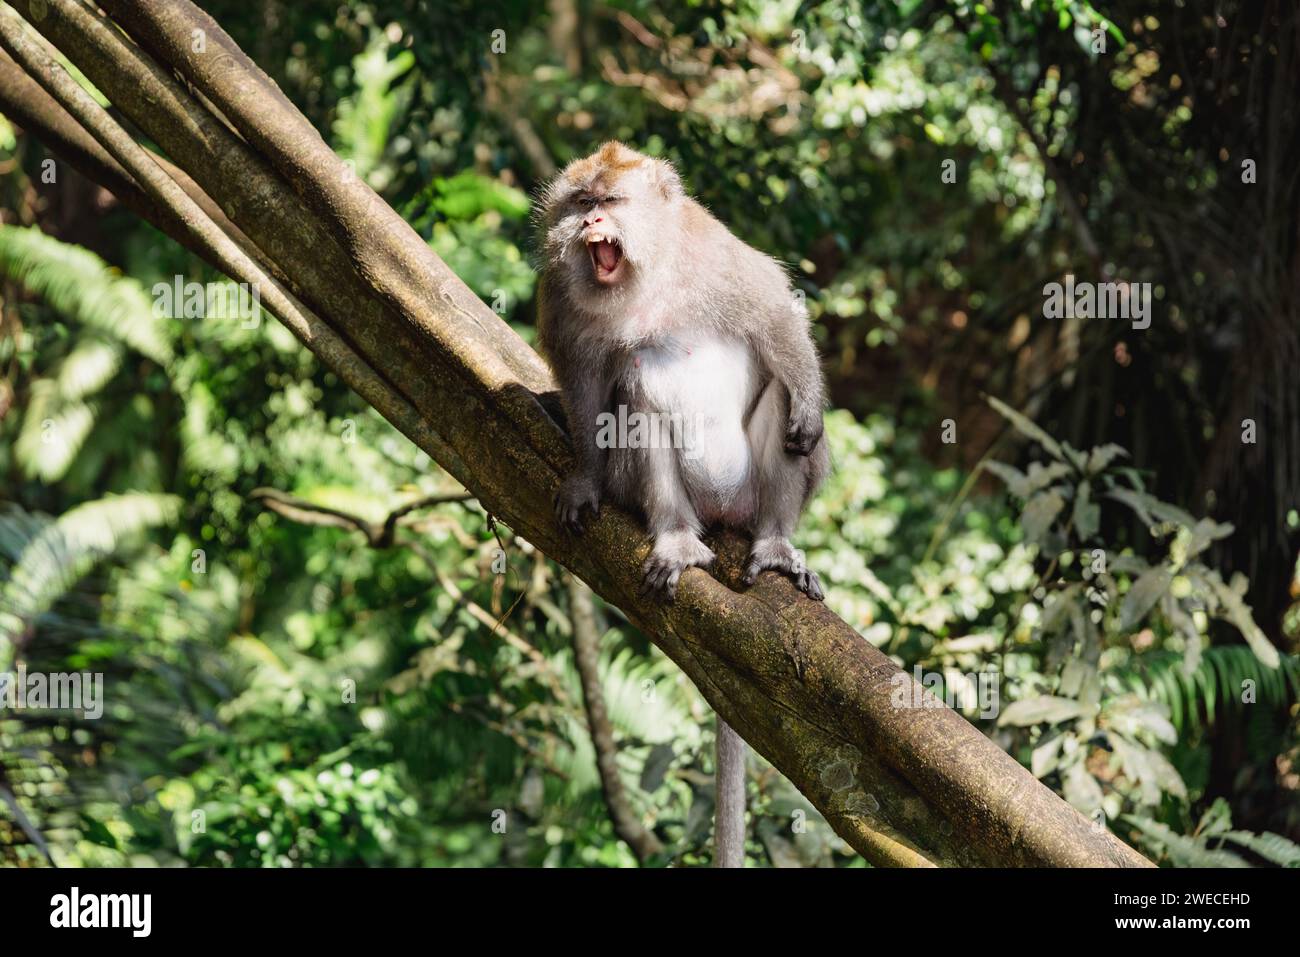 L'incanto della Foresta delle scimmie di Bali: Un timido residente a metà chiacchierare su un ramo dell'albero, incarnando lo spirito vibrante di questo santuario esotico. Foto Stock